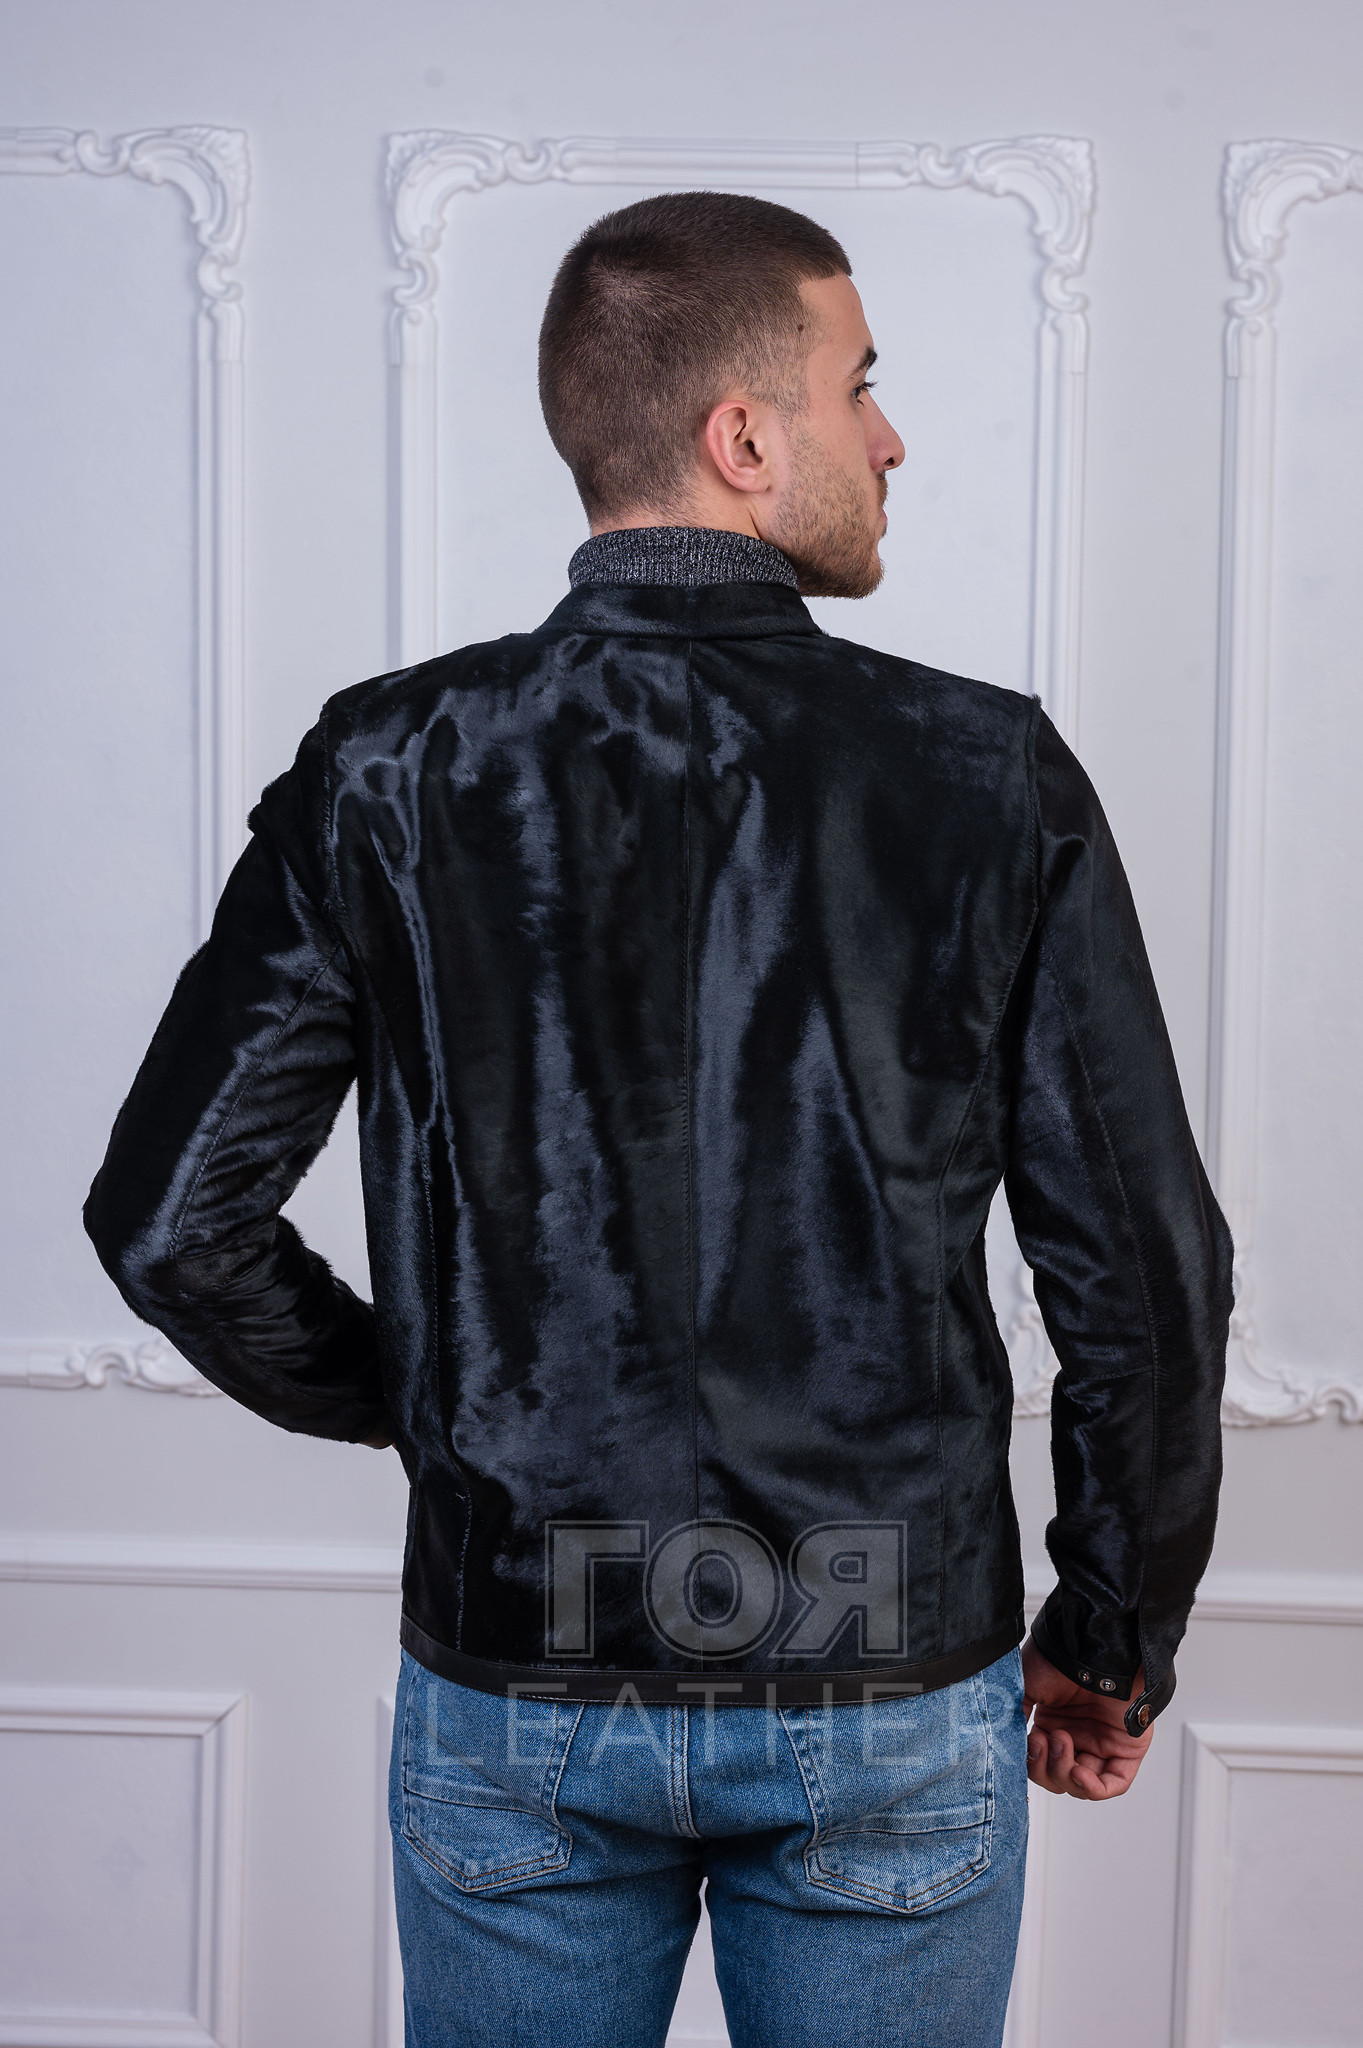 Луксозно мъжко кожено яке от пони. Нов ексклузивен модел от ГОЯ Leather. Якето е изработено 100% естествена кожа от пони в съчетание с елементи от агнешка напа. Закопчаване с метален цип. Моделът разполага с два външни и два вътрешни джоба.